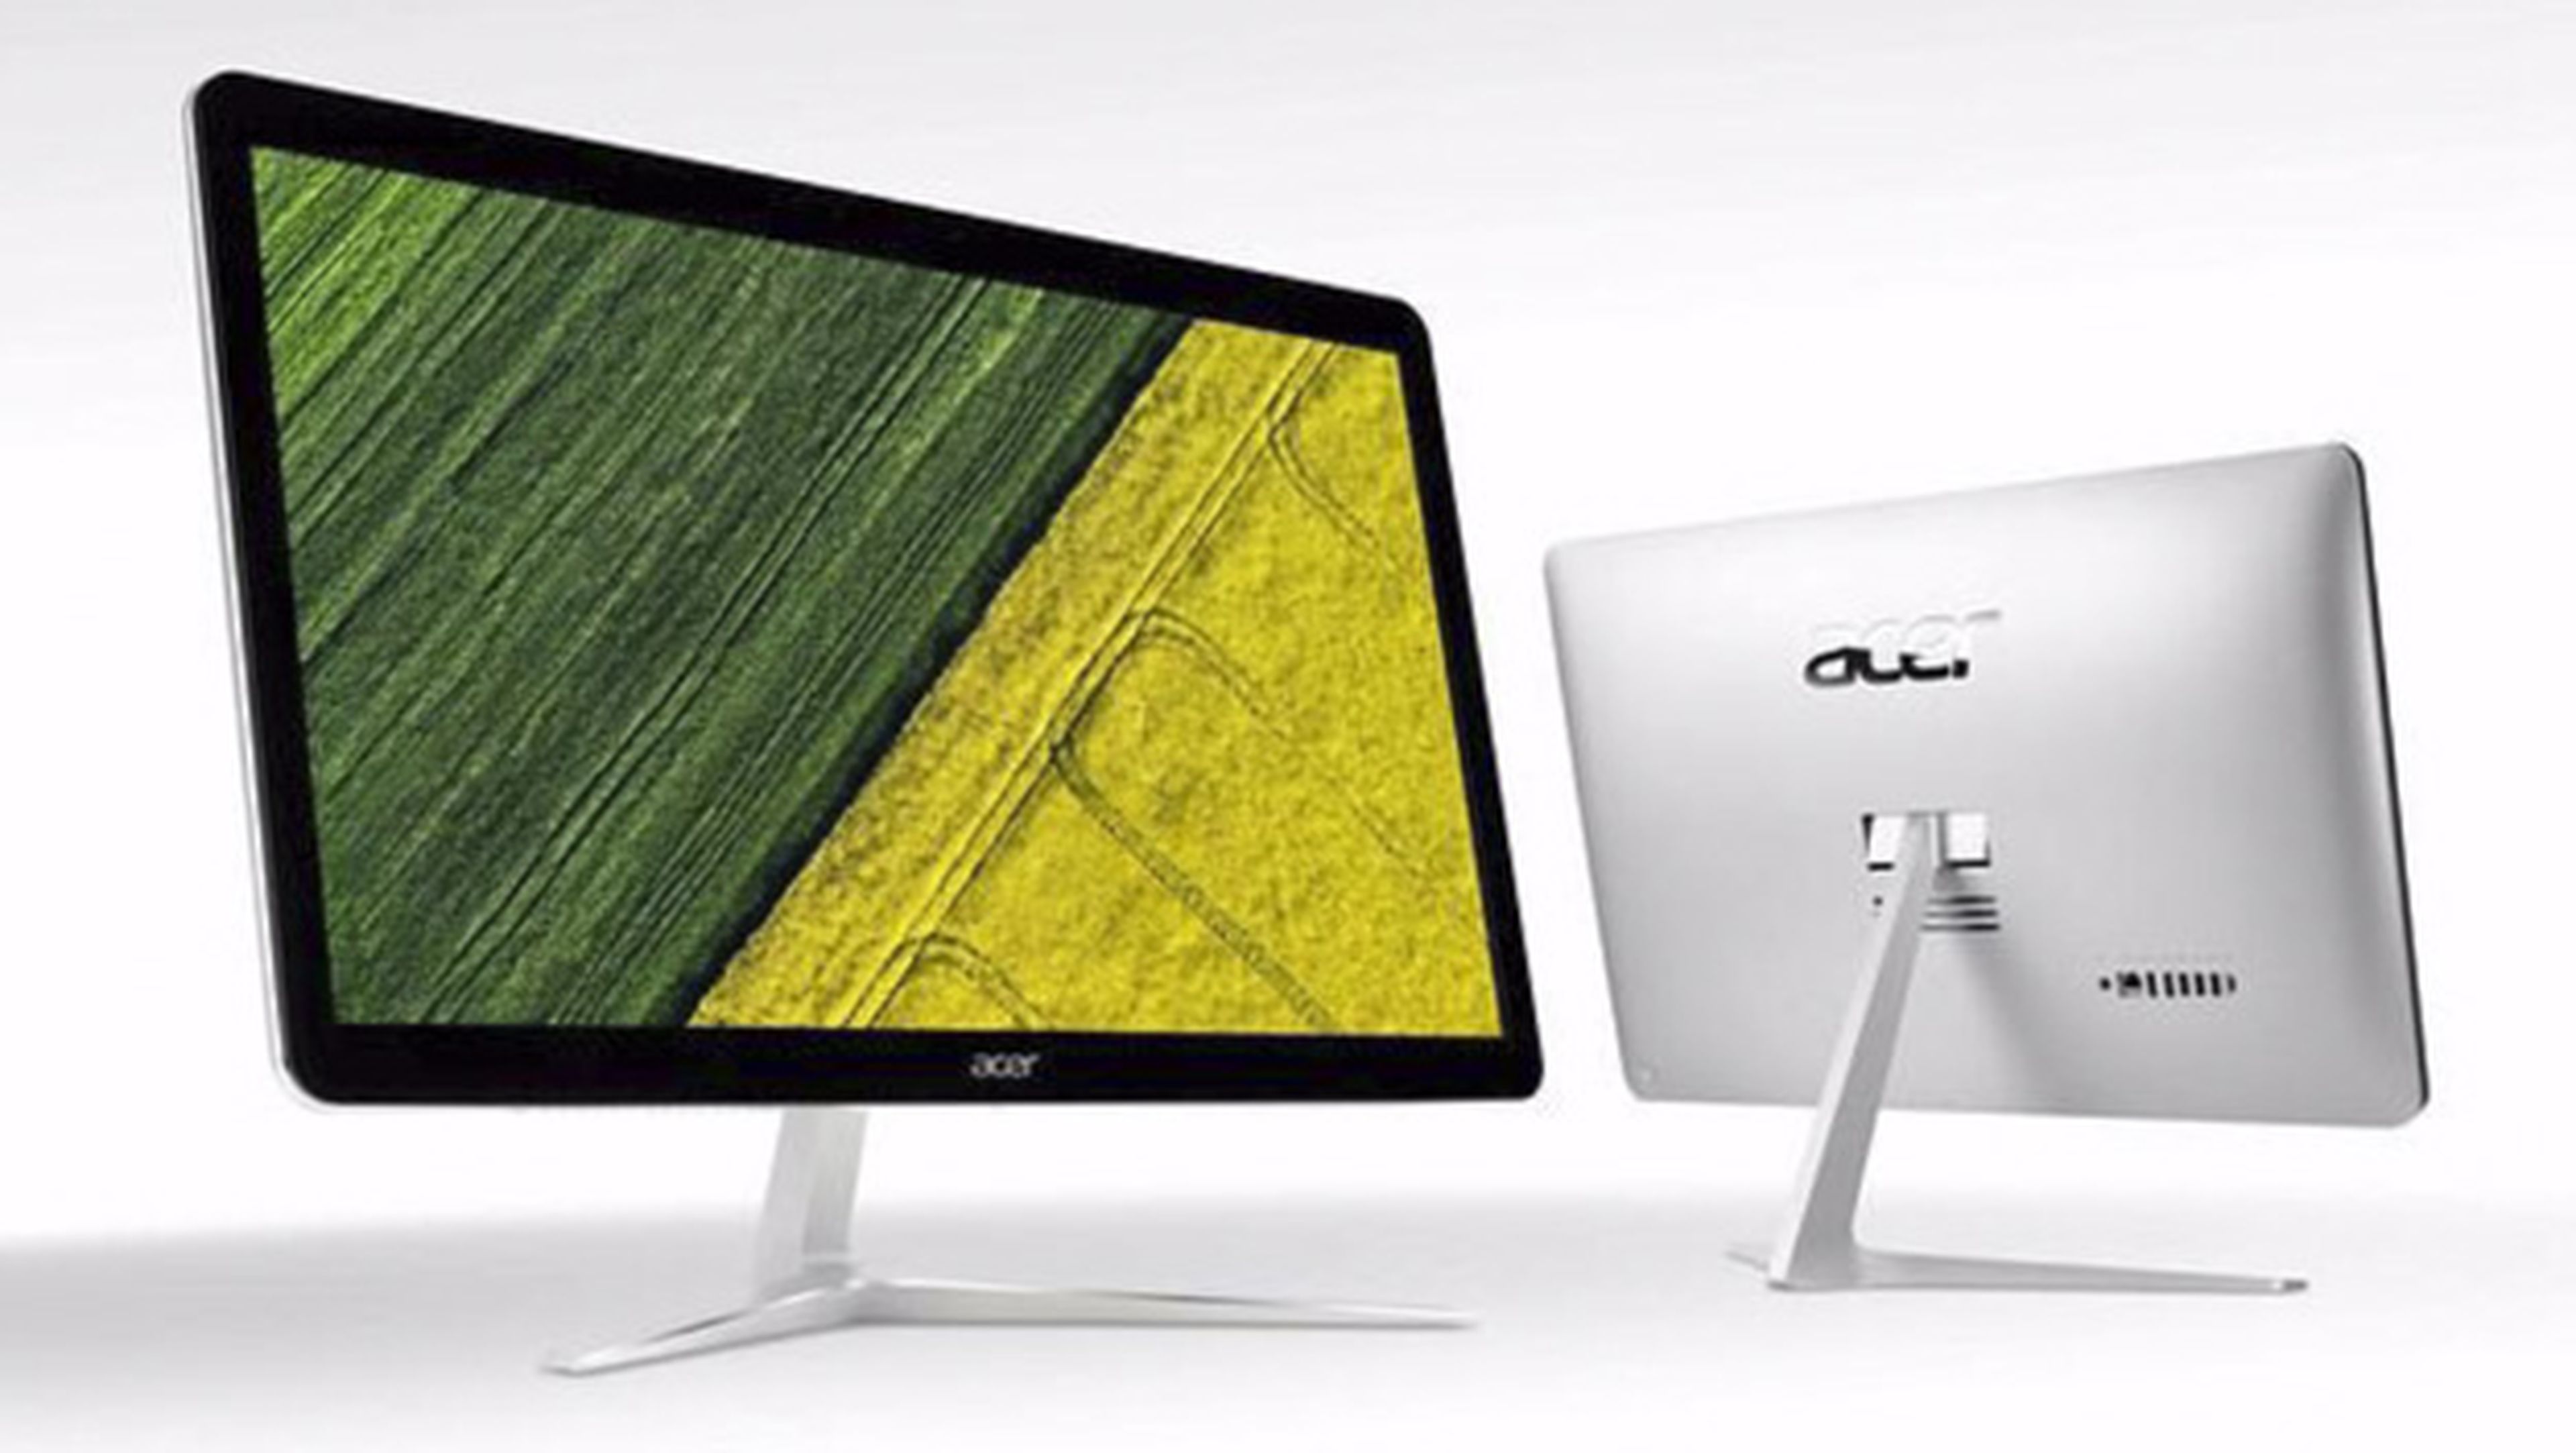 Acer presenta la línea Aspire AIO con dos elegantes equipos